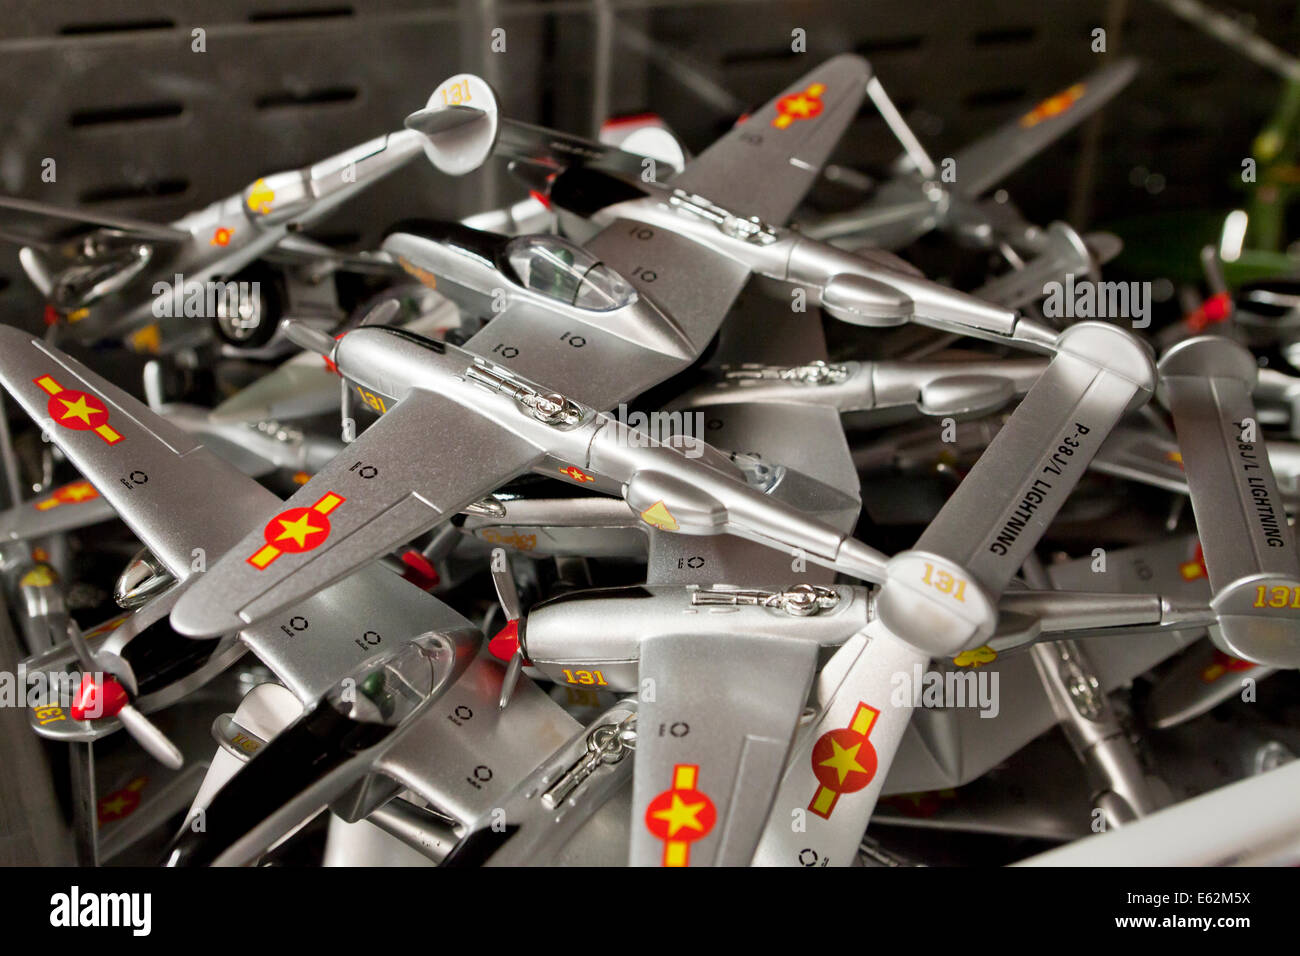 Modelos de aviones de juguete en toy store - EE.UU Fotografía de stock -  Alamy